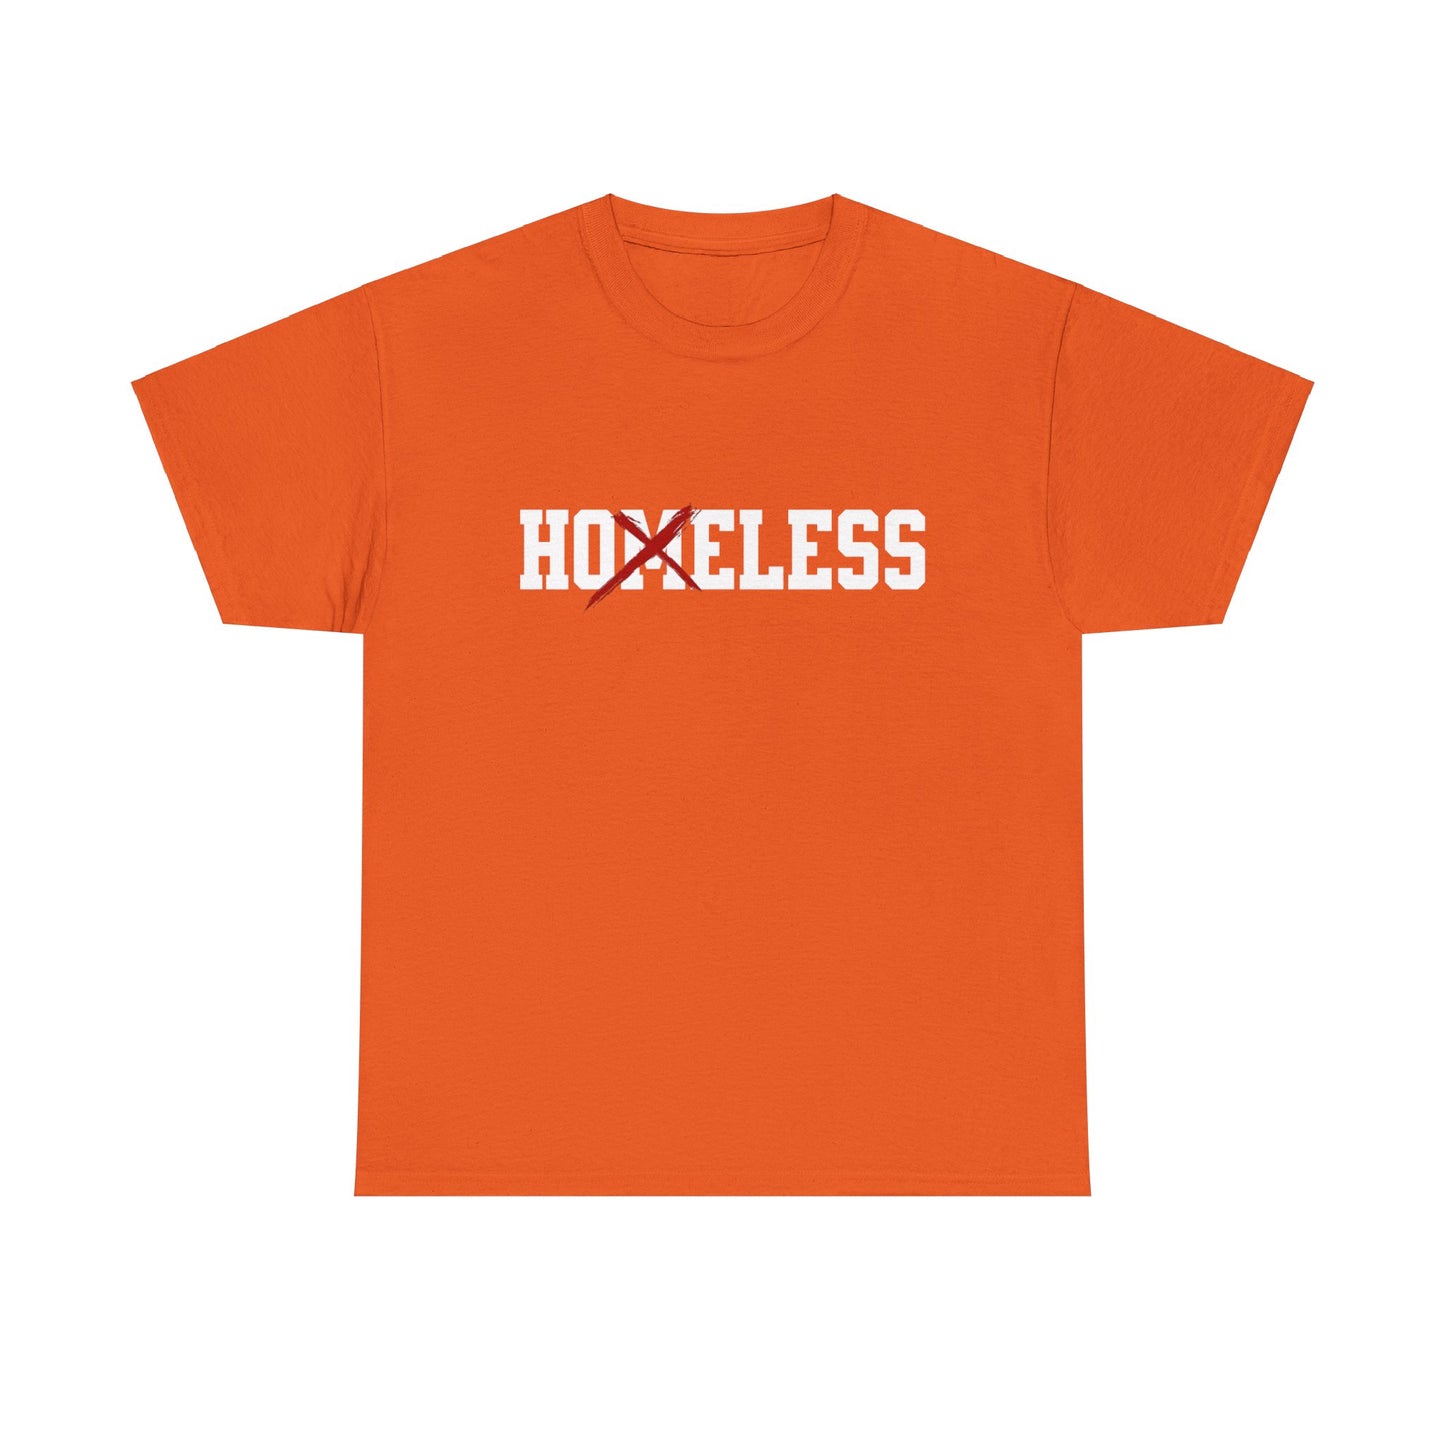 Unisex Shirt in orange mit dem Spruch Homeless drauf. Das M ist durchgestrichen; also steht auf dem Shirt Hoeless.